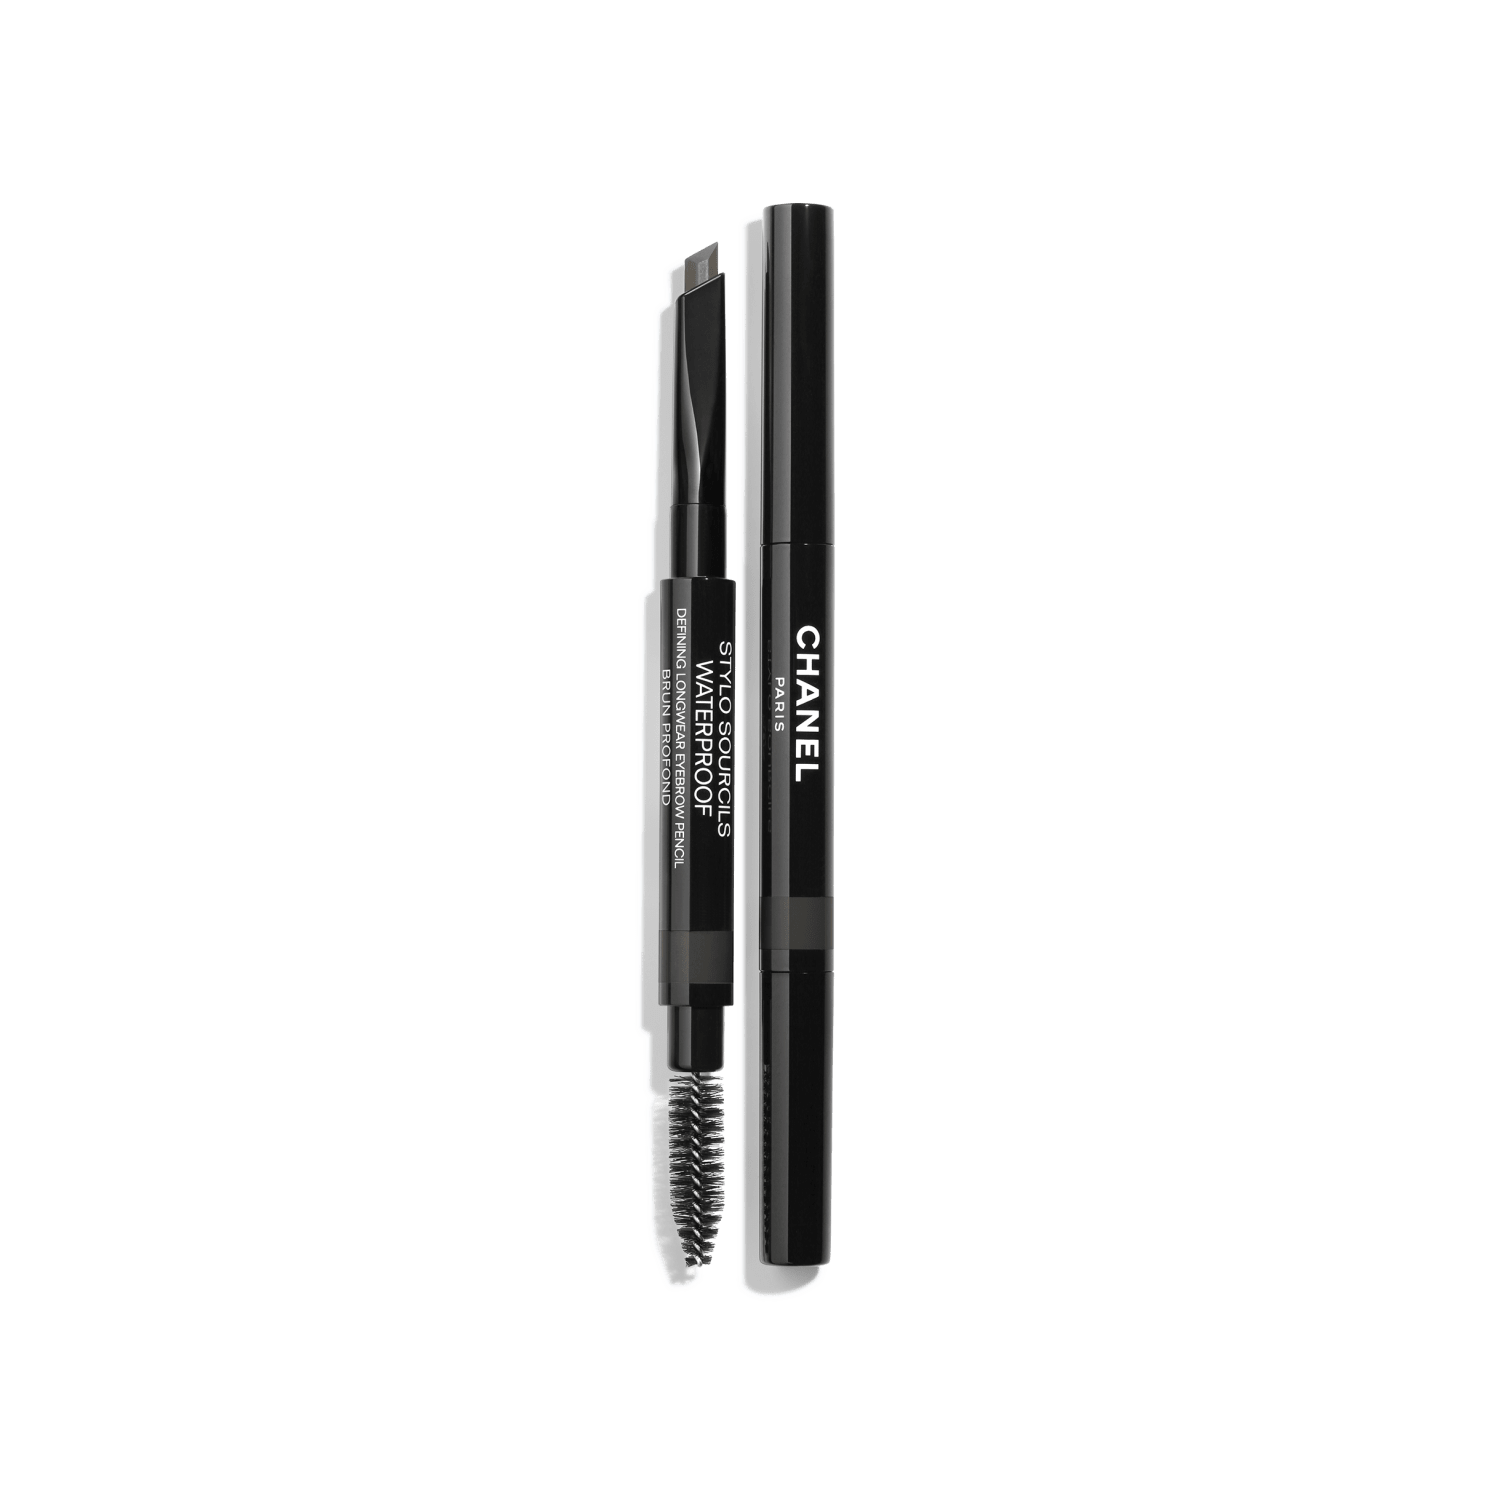 Chanel Defining Waterproof Longwear Eyebrow Pencil